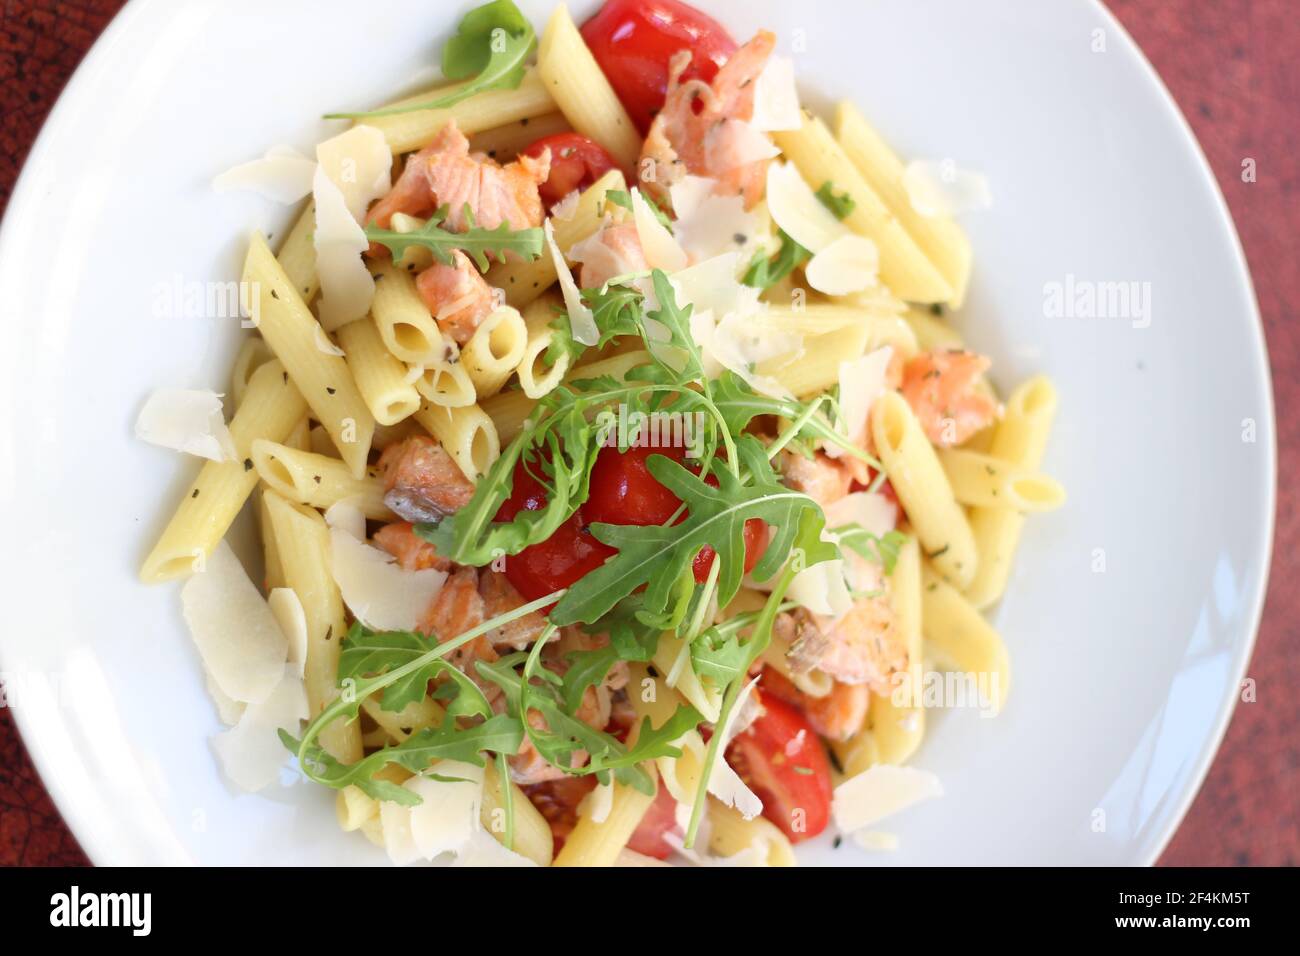 Cibo da ristorante con ingredienti freschi - pasta con pomodori, salmone, parmigiano e rucola fresca Foto Stock